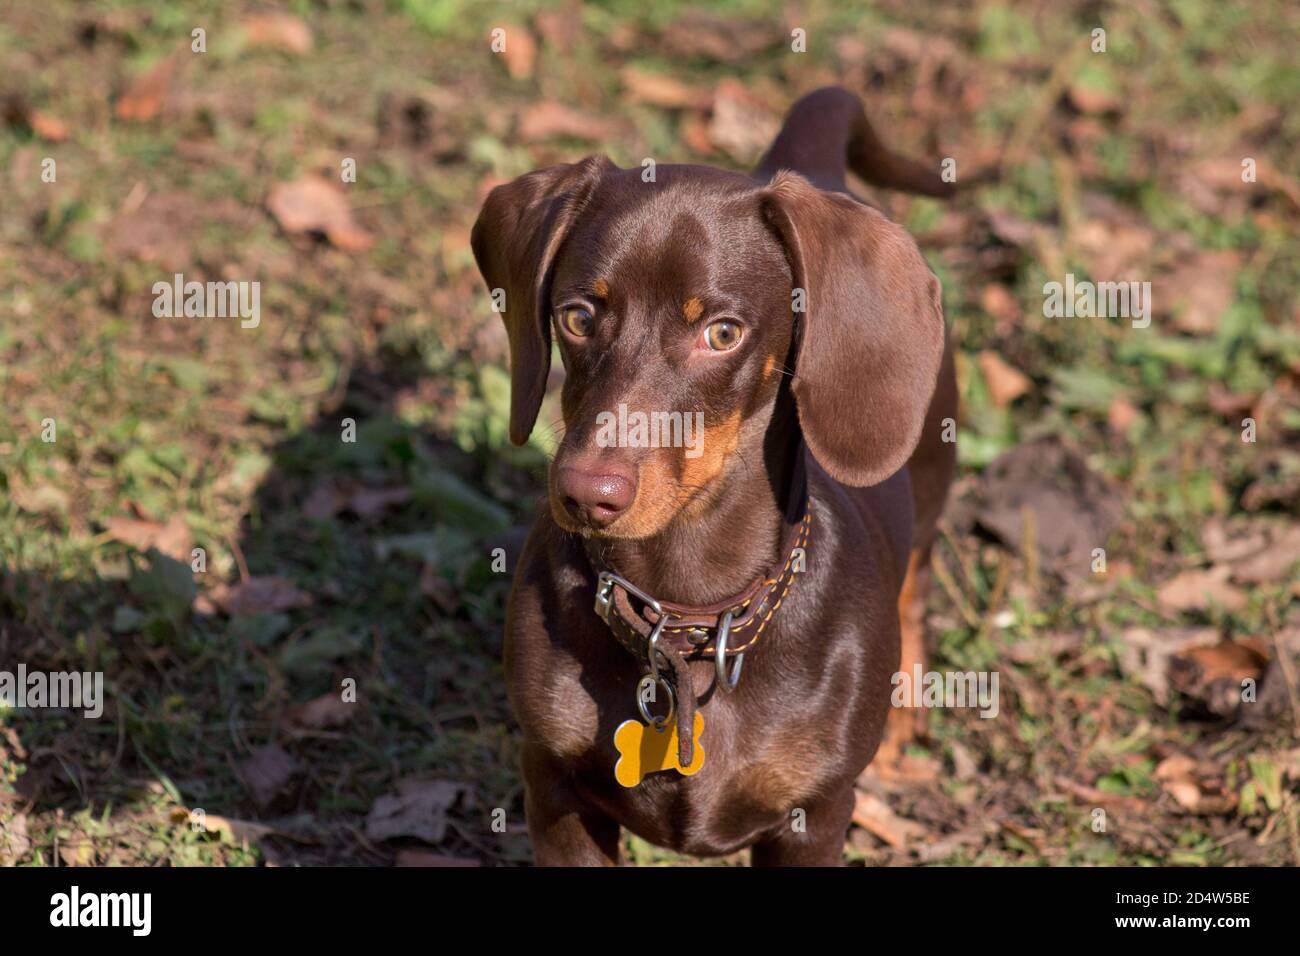 Im Herbstpark steht ein süßer Dackel-Welpe. Wiener Hund oder Wursthund. Haustiere. Reinrassig. Stockfoto